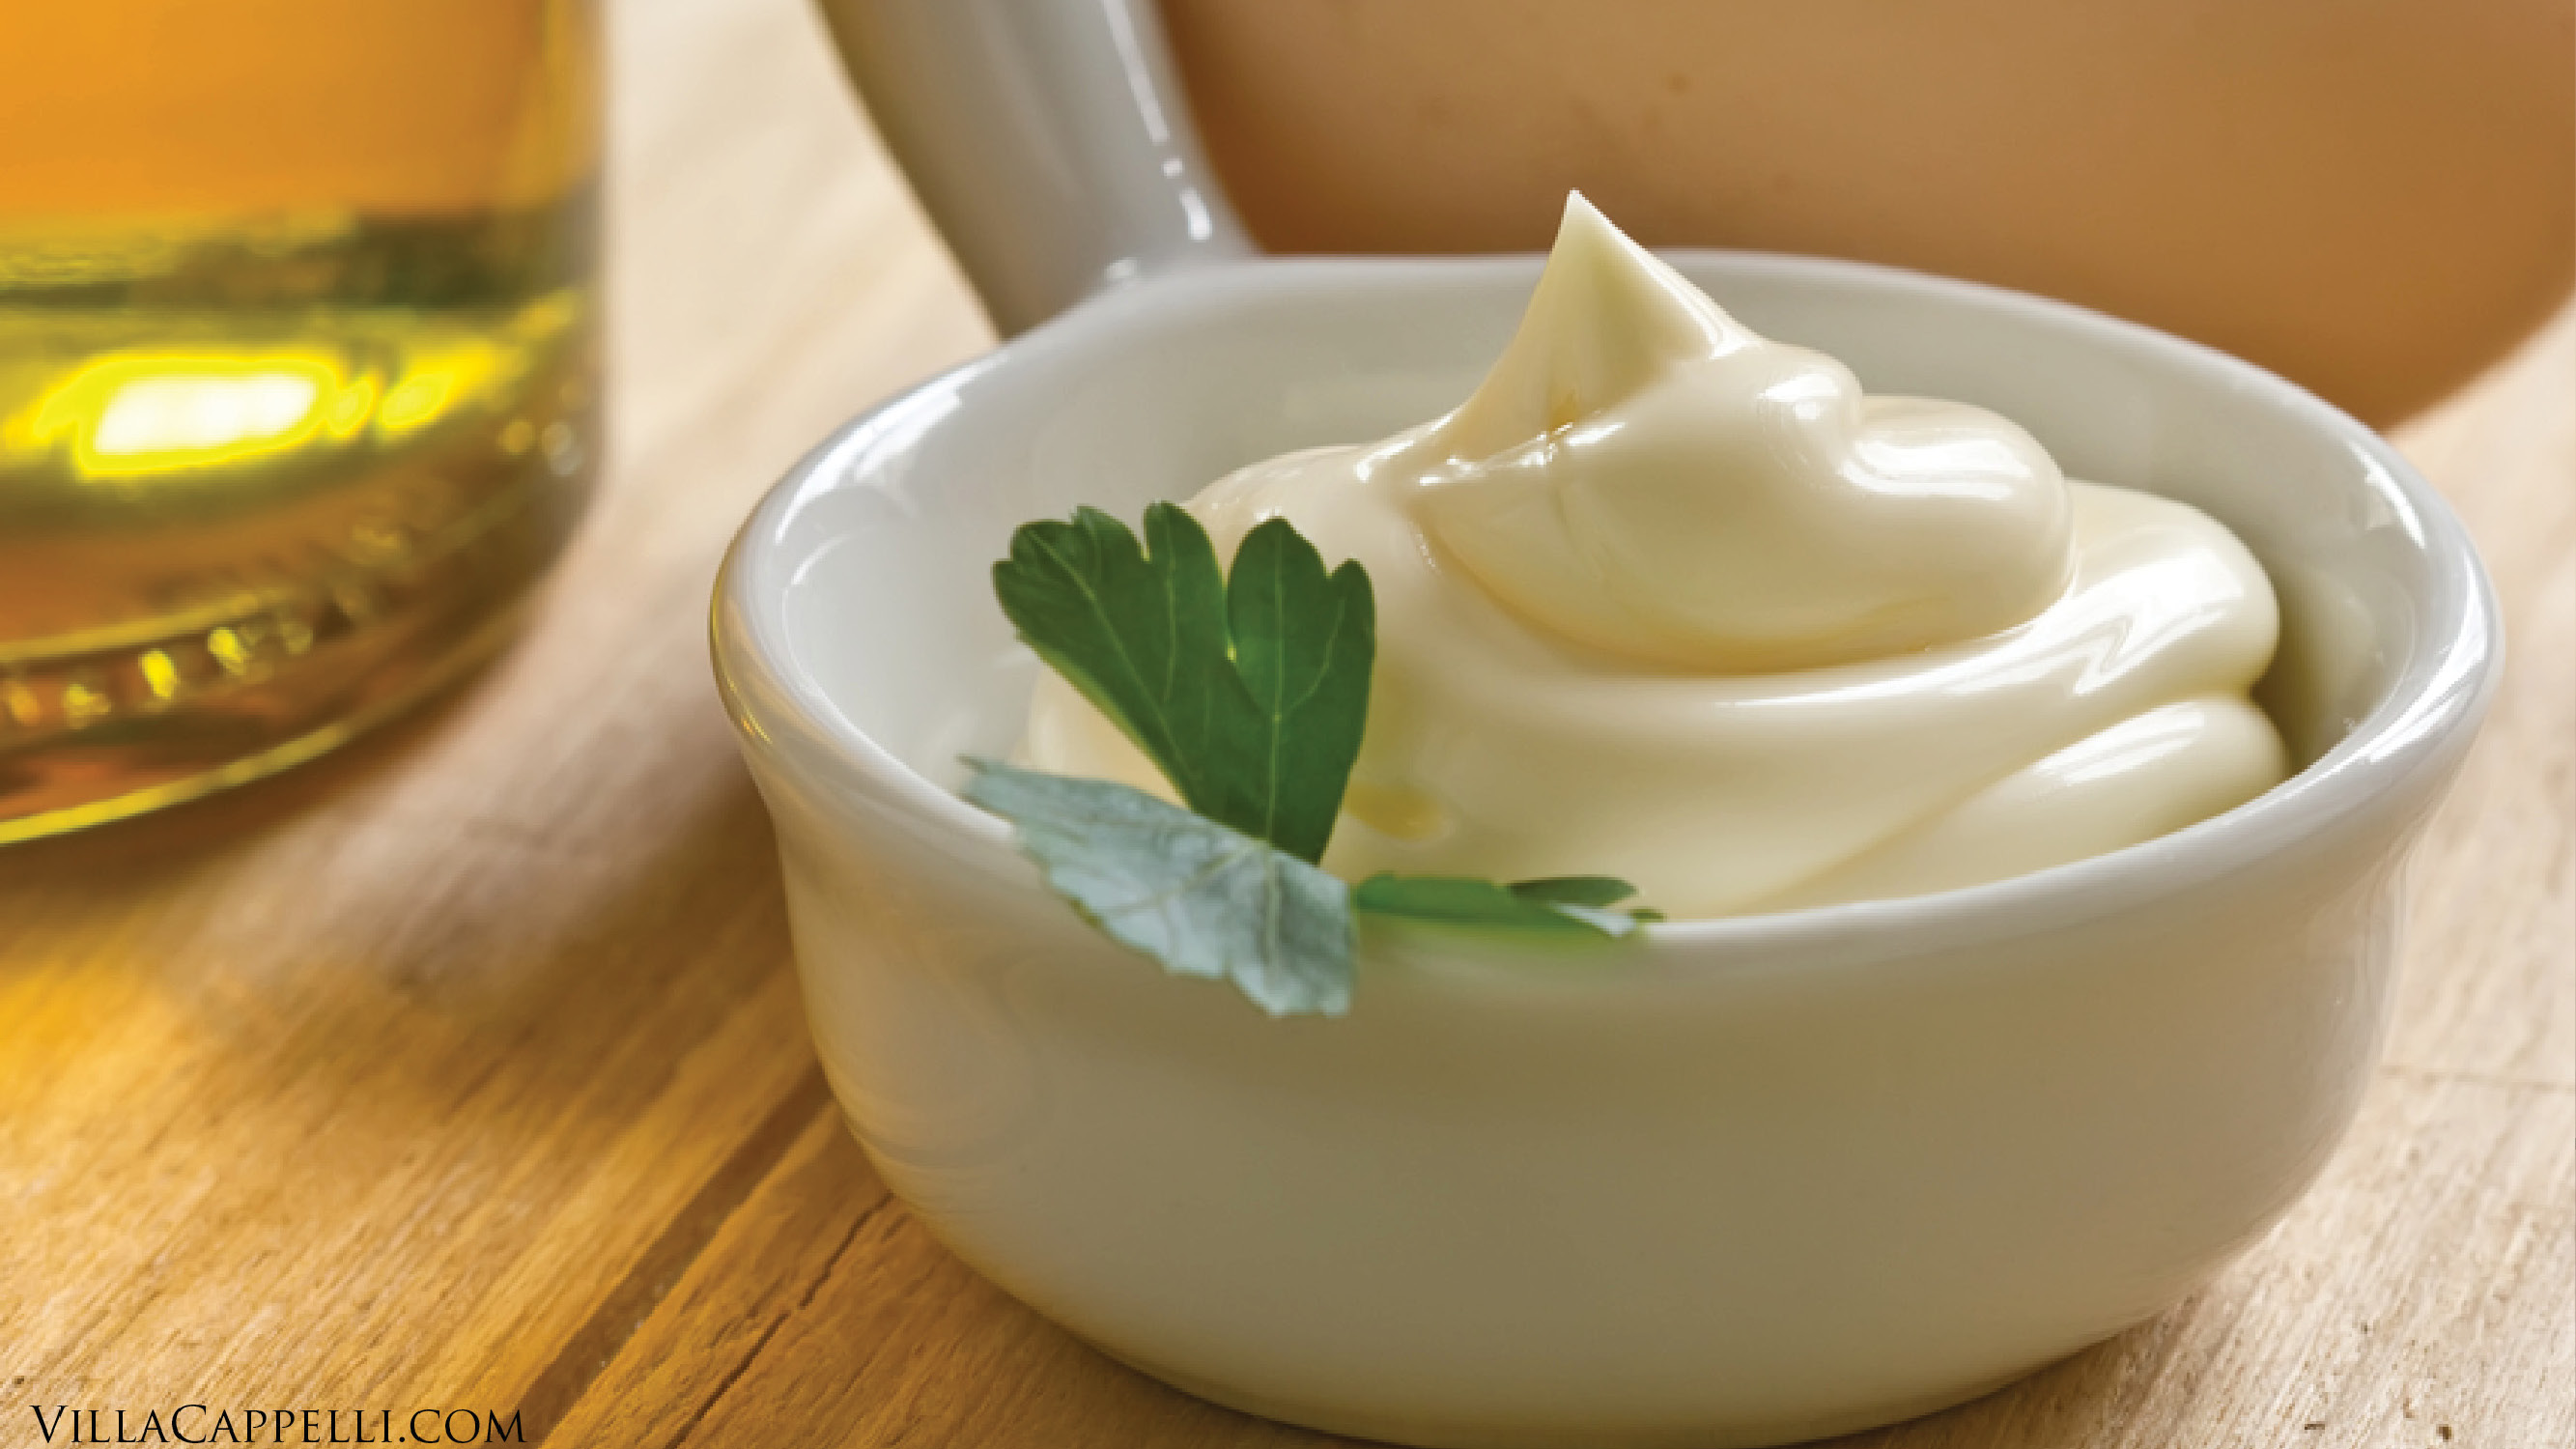 Italian Food recipes healthy mayo extra virgin olive oil